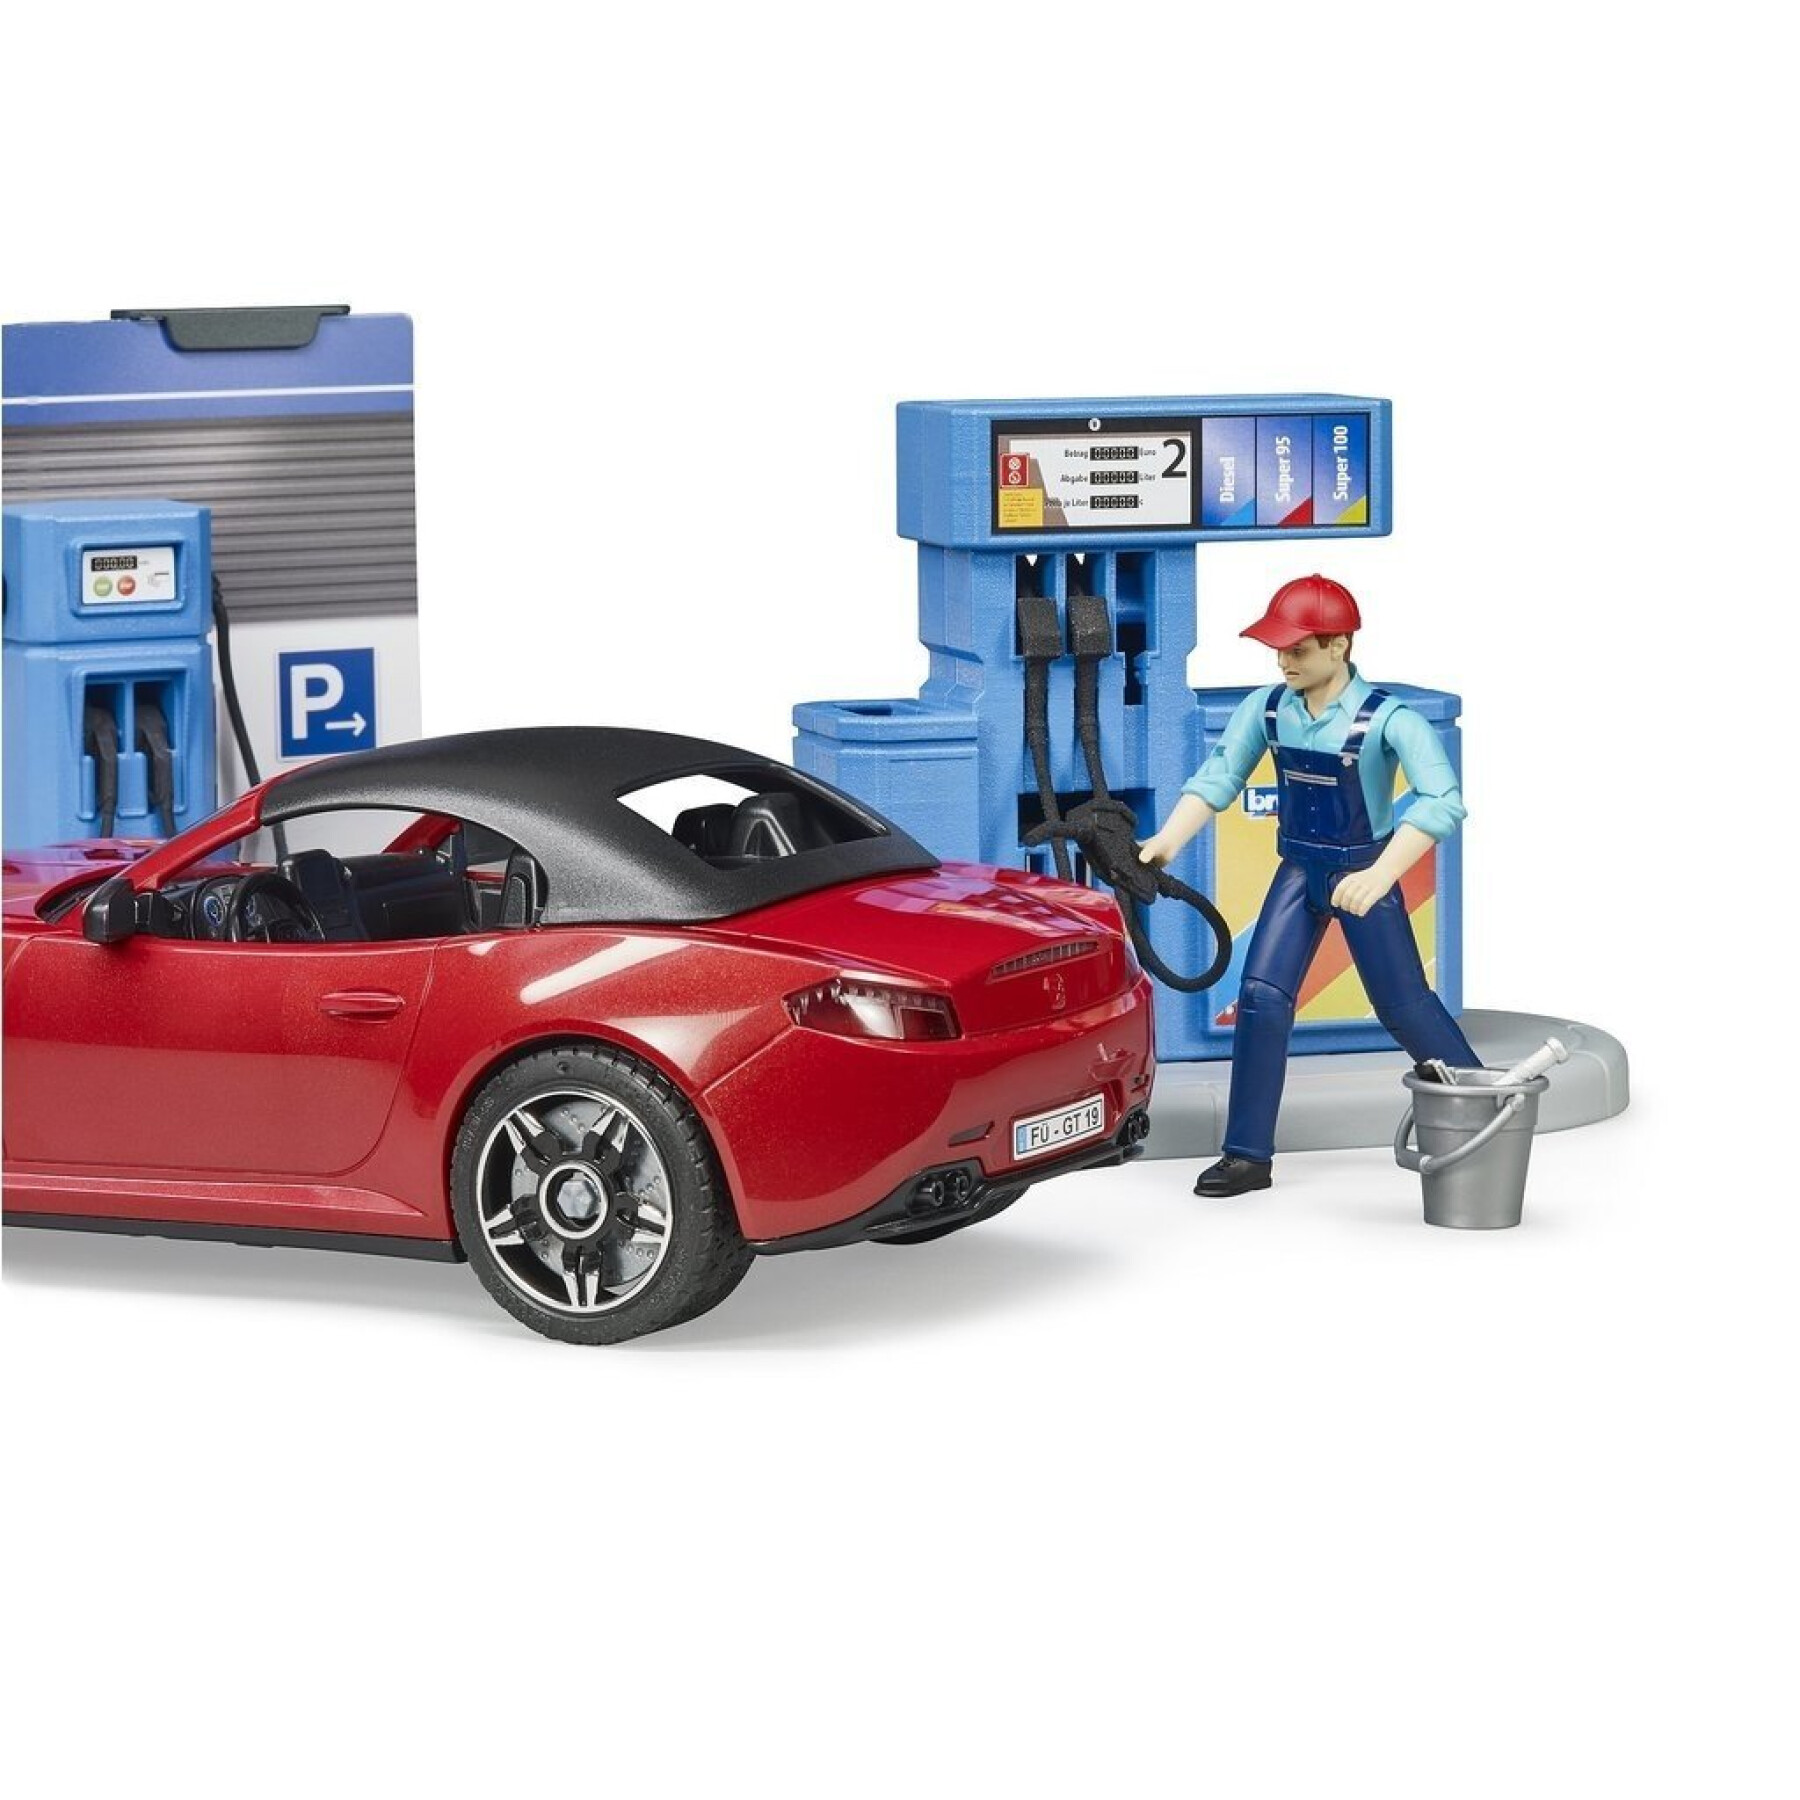 Figurine - Tankstelle und Autowaschanlage Bruder